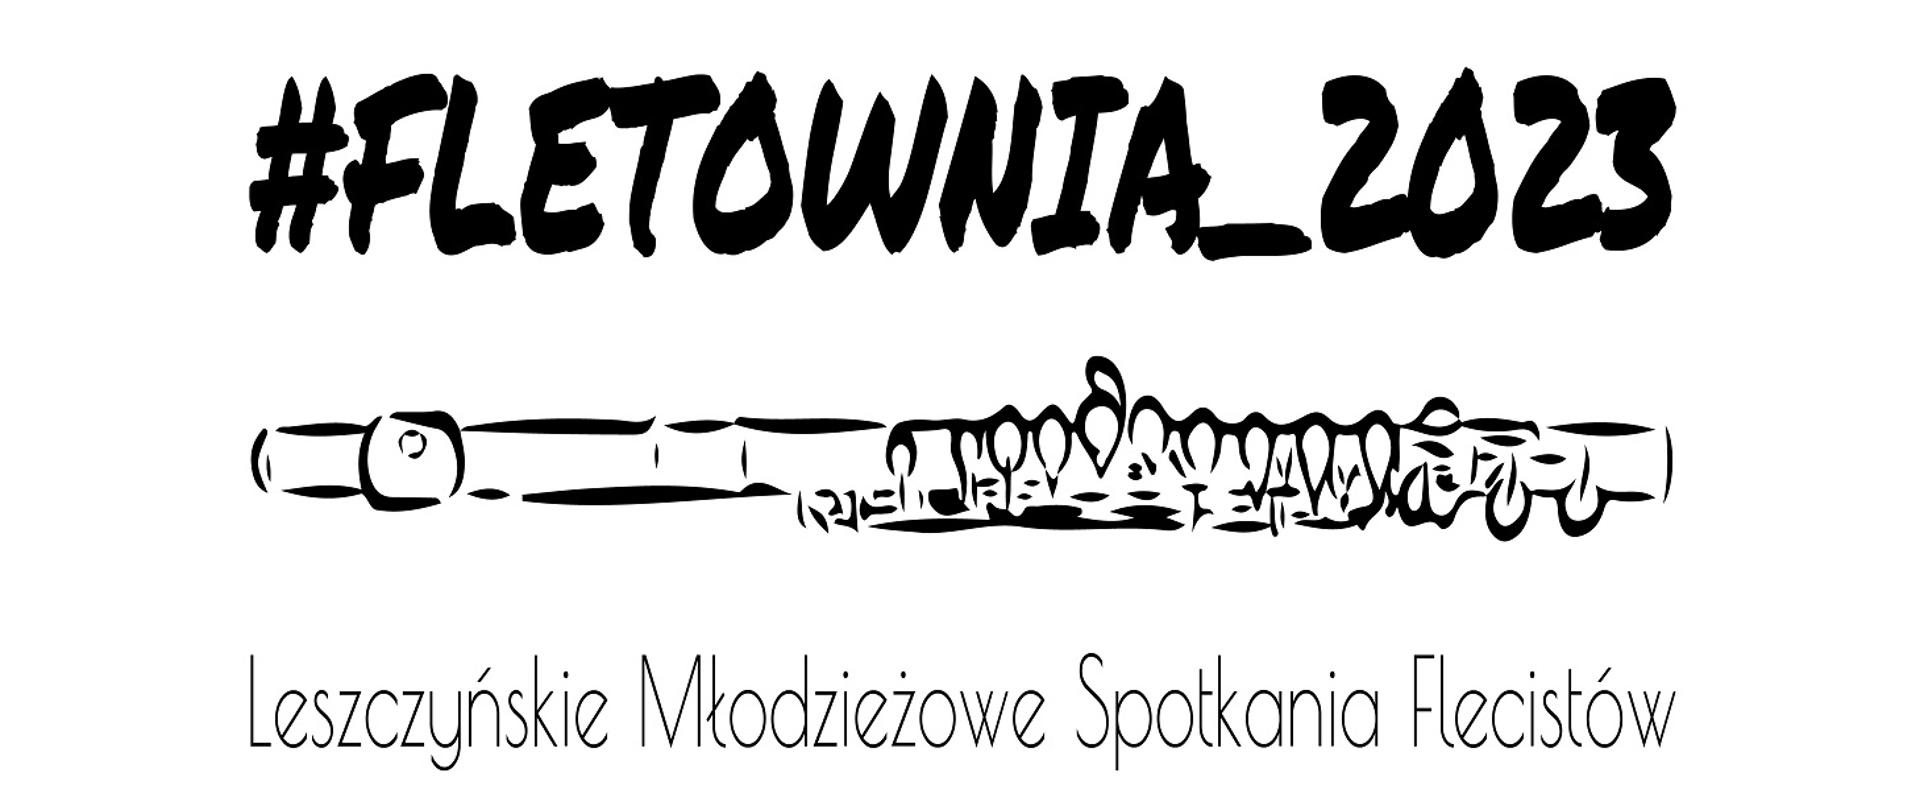 Fletownia 2023 Leszczyńskie Młodzieżowe Spotkania Flecistów z rysunkiem fletu